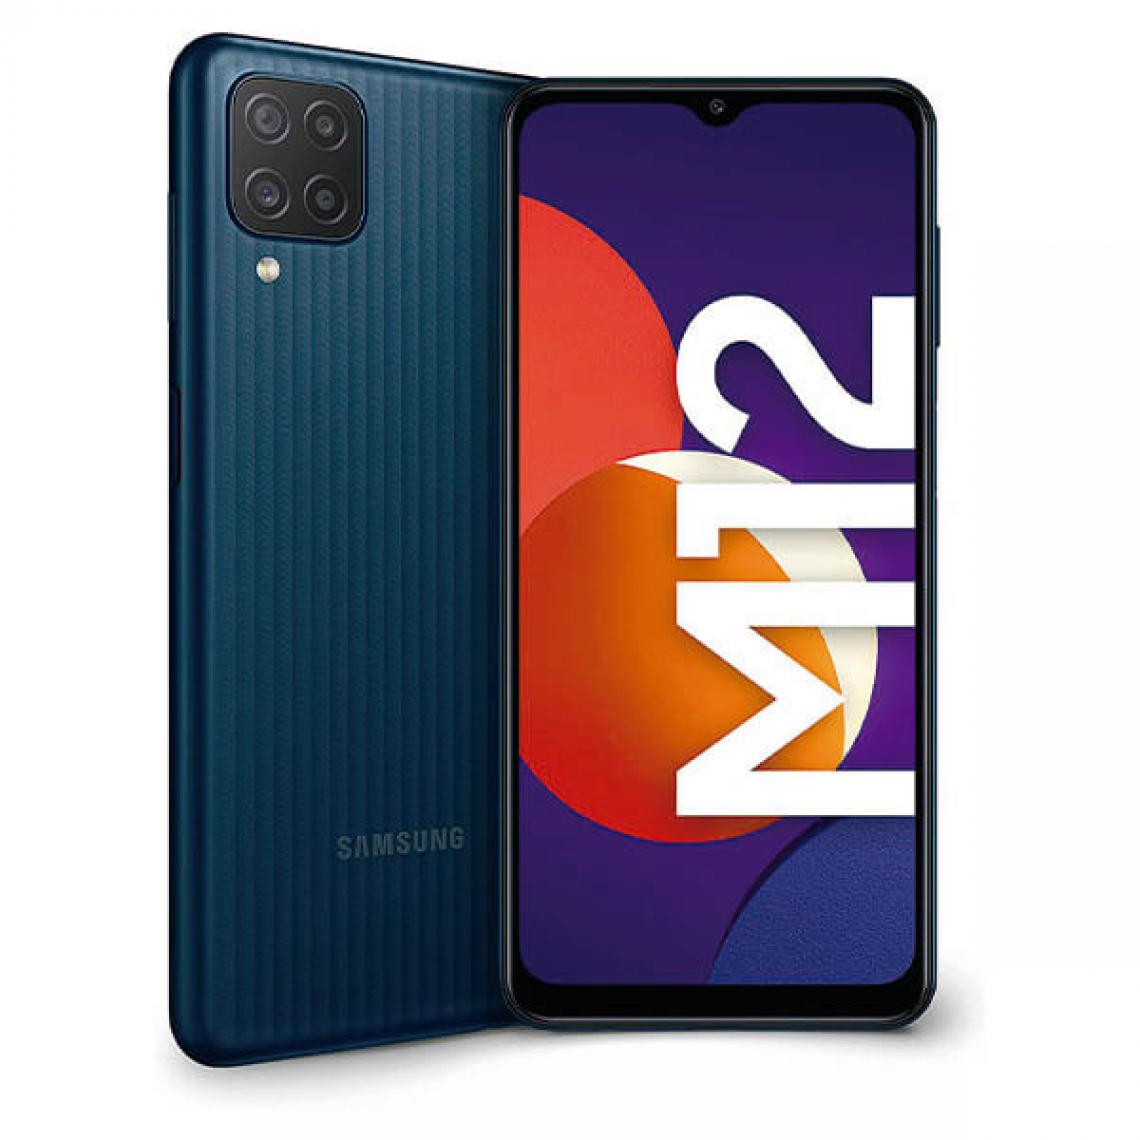 Samsung - Samsung M12 4Go/64Go Noir Dual Sim SM-M127F - Smartphone Android